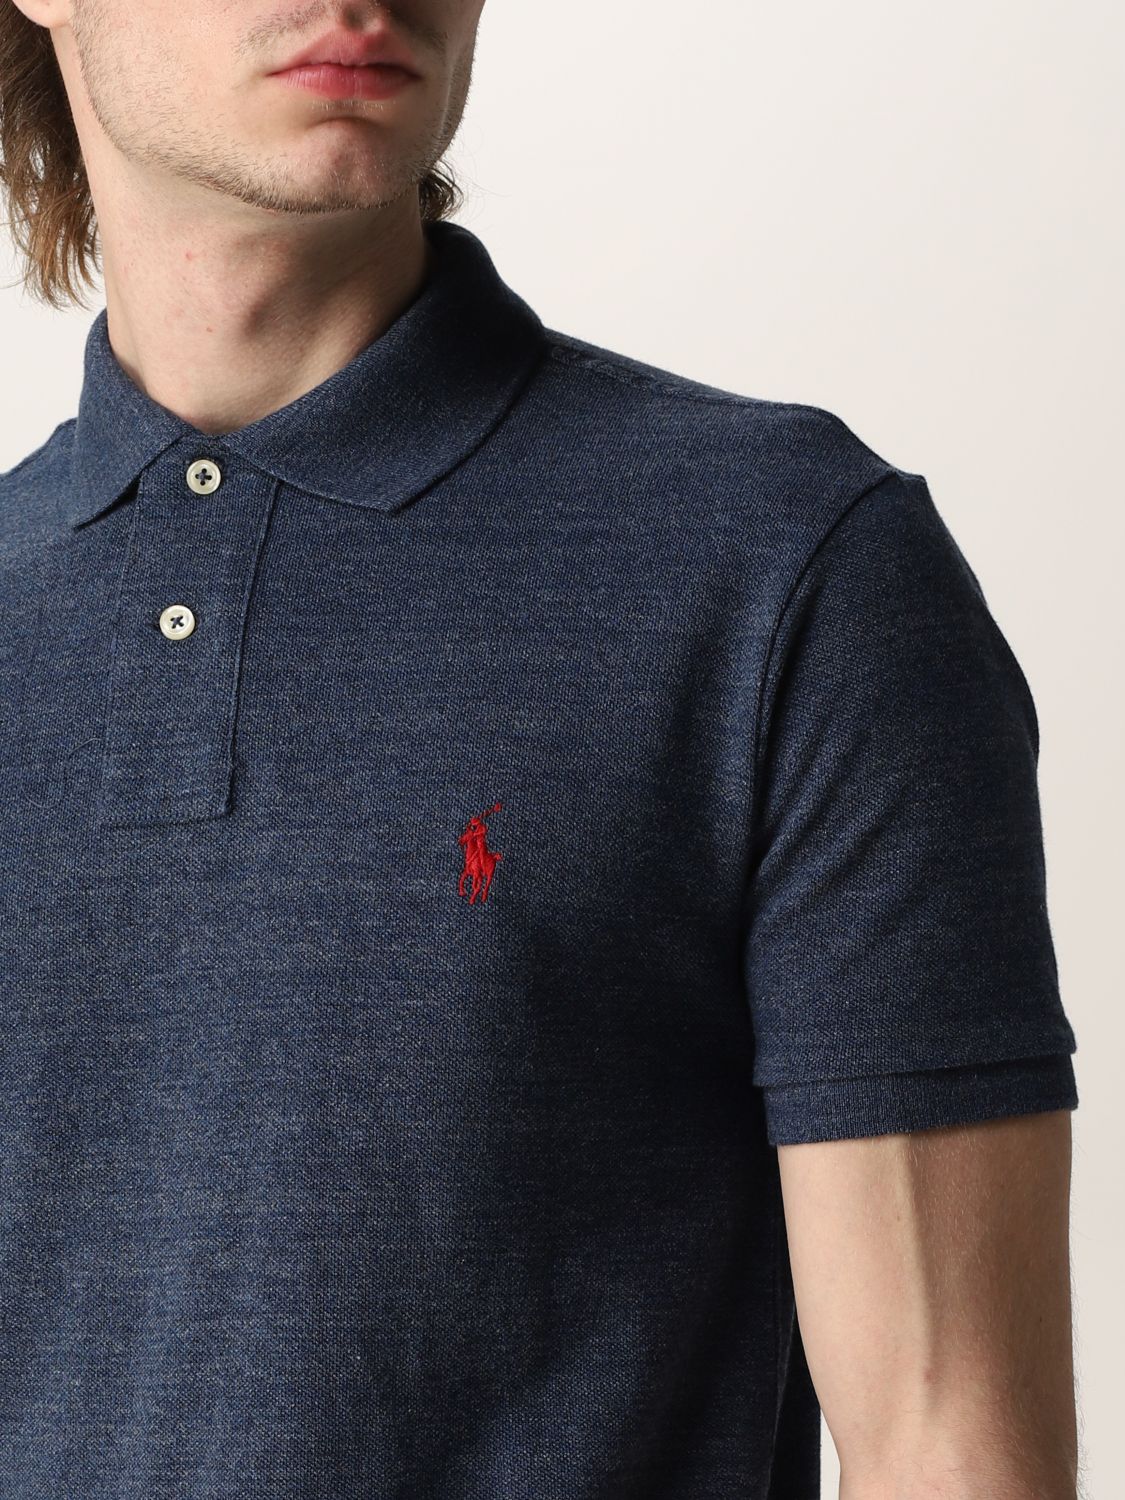 ポロシャツ ポロラルフローレン: ポロシャツ Polo Ralph Lauren メンズ デニム 3